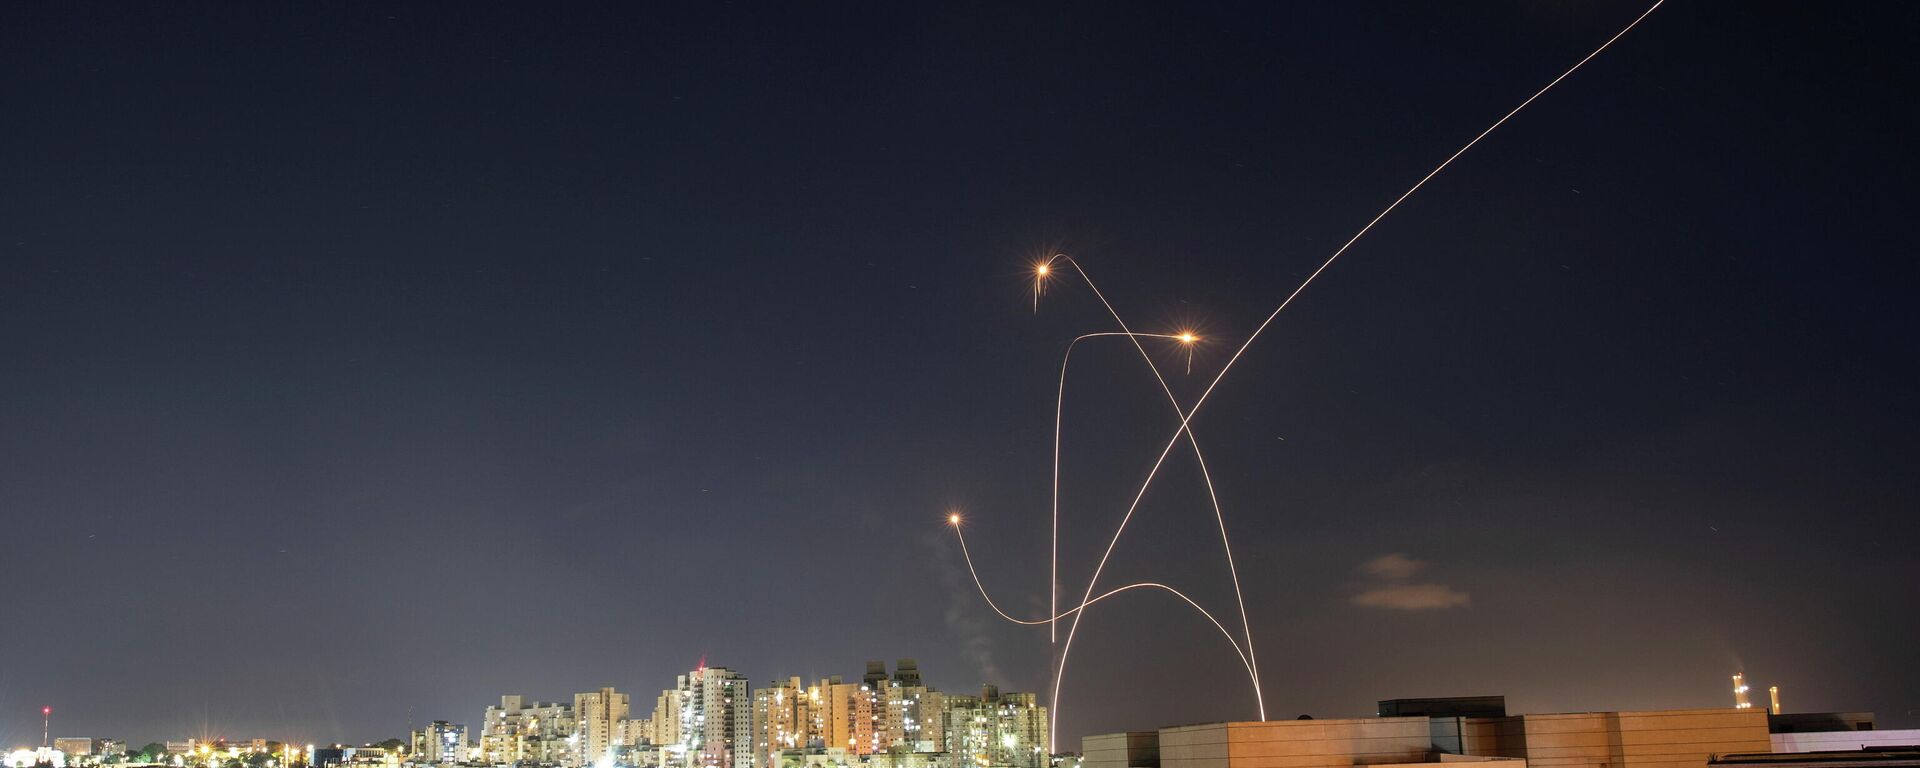 El sistema antimisiles israelí intercepta unos cohetes lanzados desde la Franja de Gaza hacia Israel - Sputnik Mundo, 1920, 15.05.2021